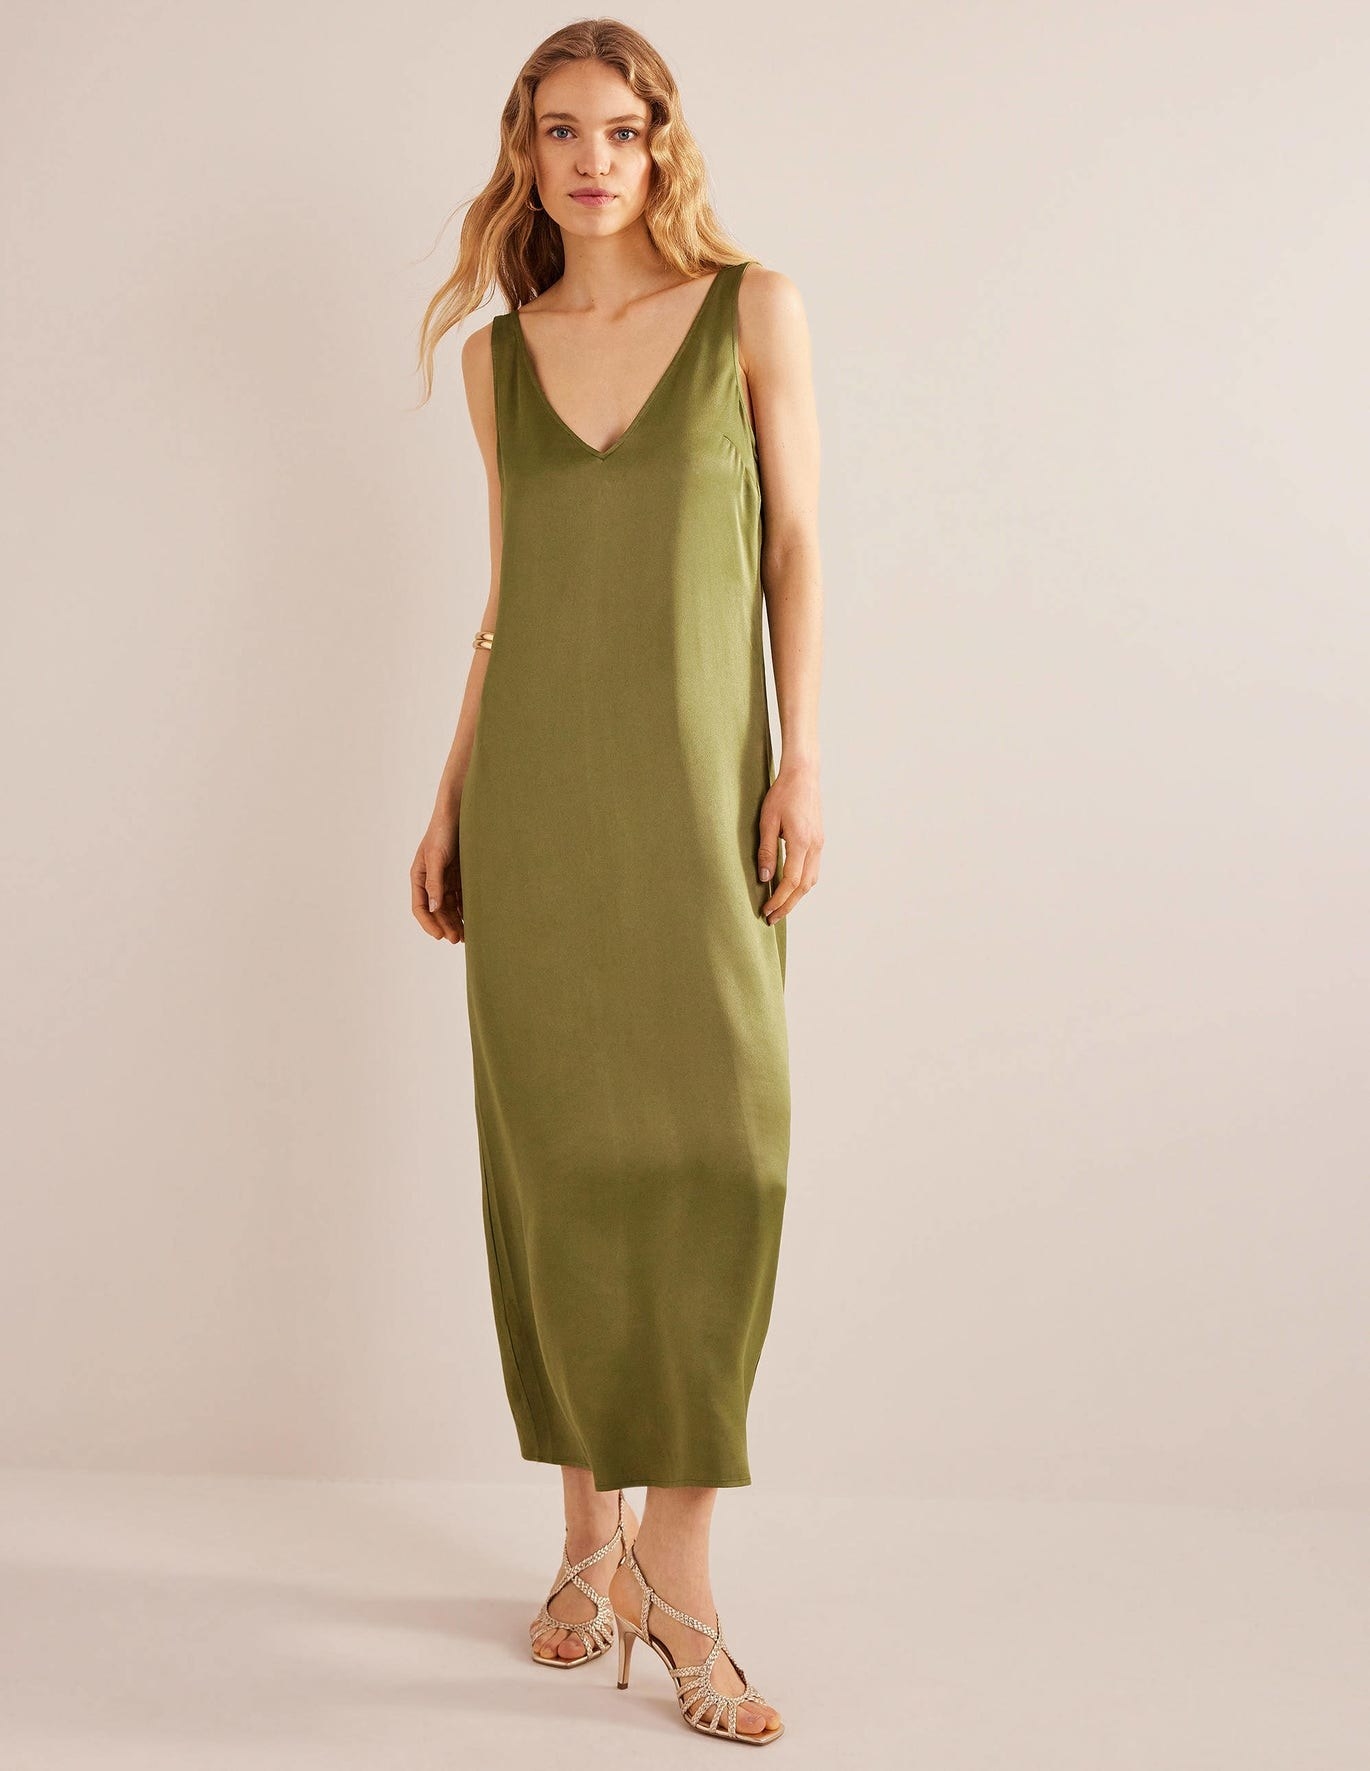 model in olive green v-neck tank sleeve maxi slip dress